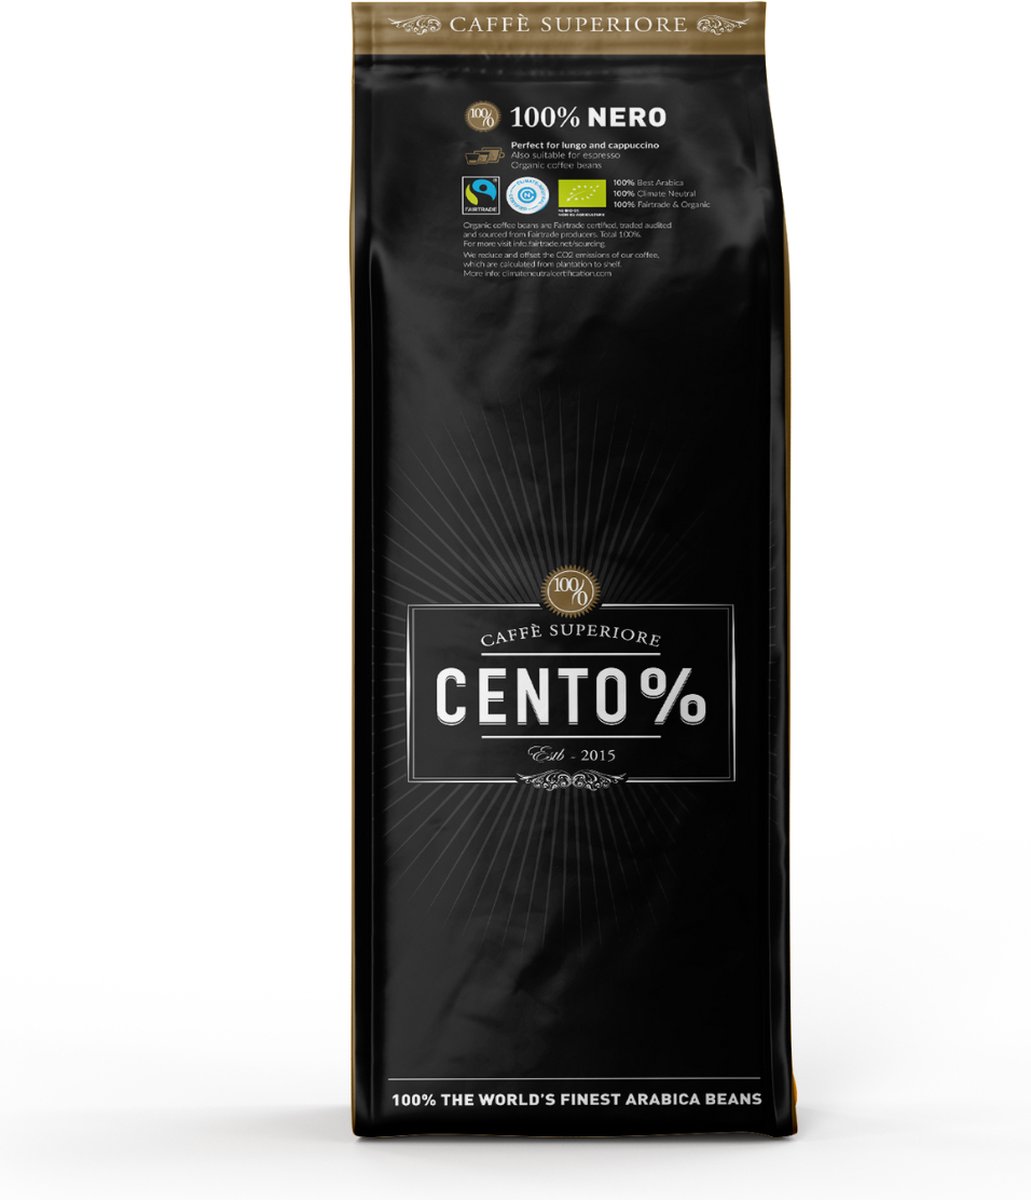 Cento% Nero - Donker gebrande koffiebonen - 750 gram - Biologisch & Fairtrade - 100% Arabica